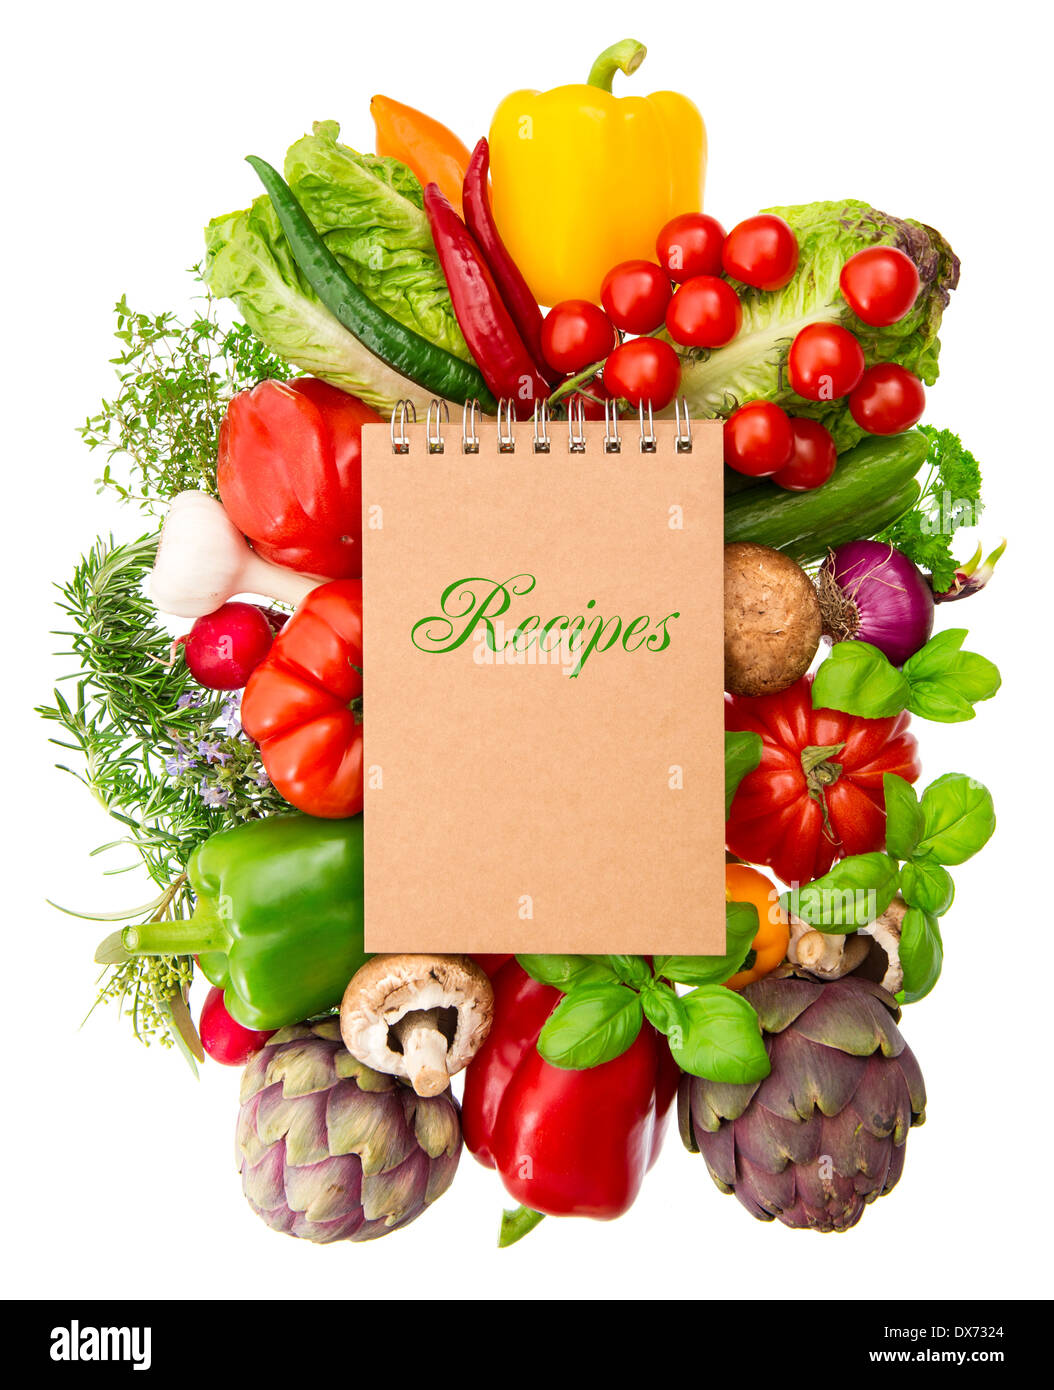 Livre des produits frais bio Légumes et herbes isolé sur fond blanc. la nourriture crue. Ingrédients nutrition saine Banque D'Images